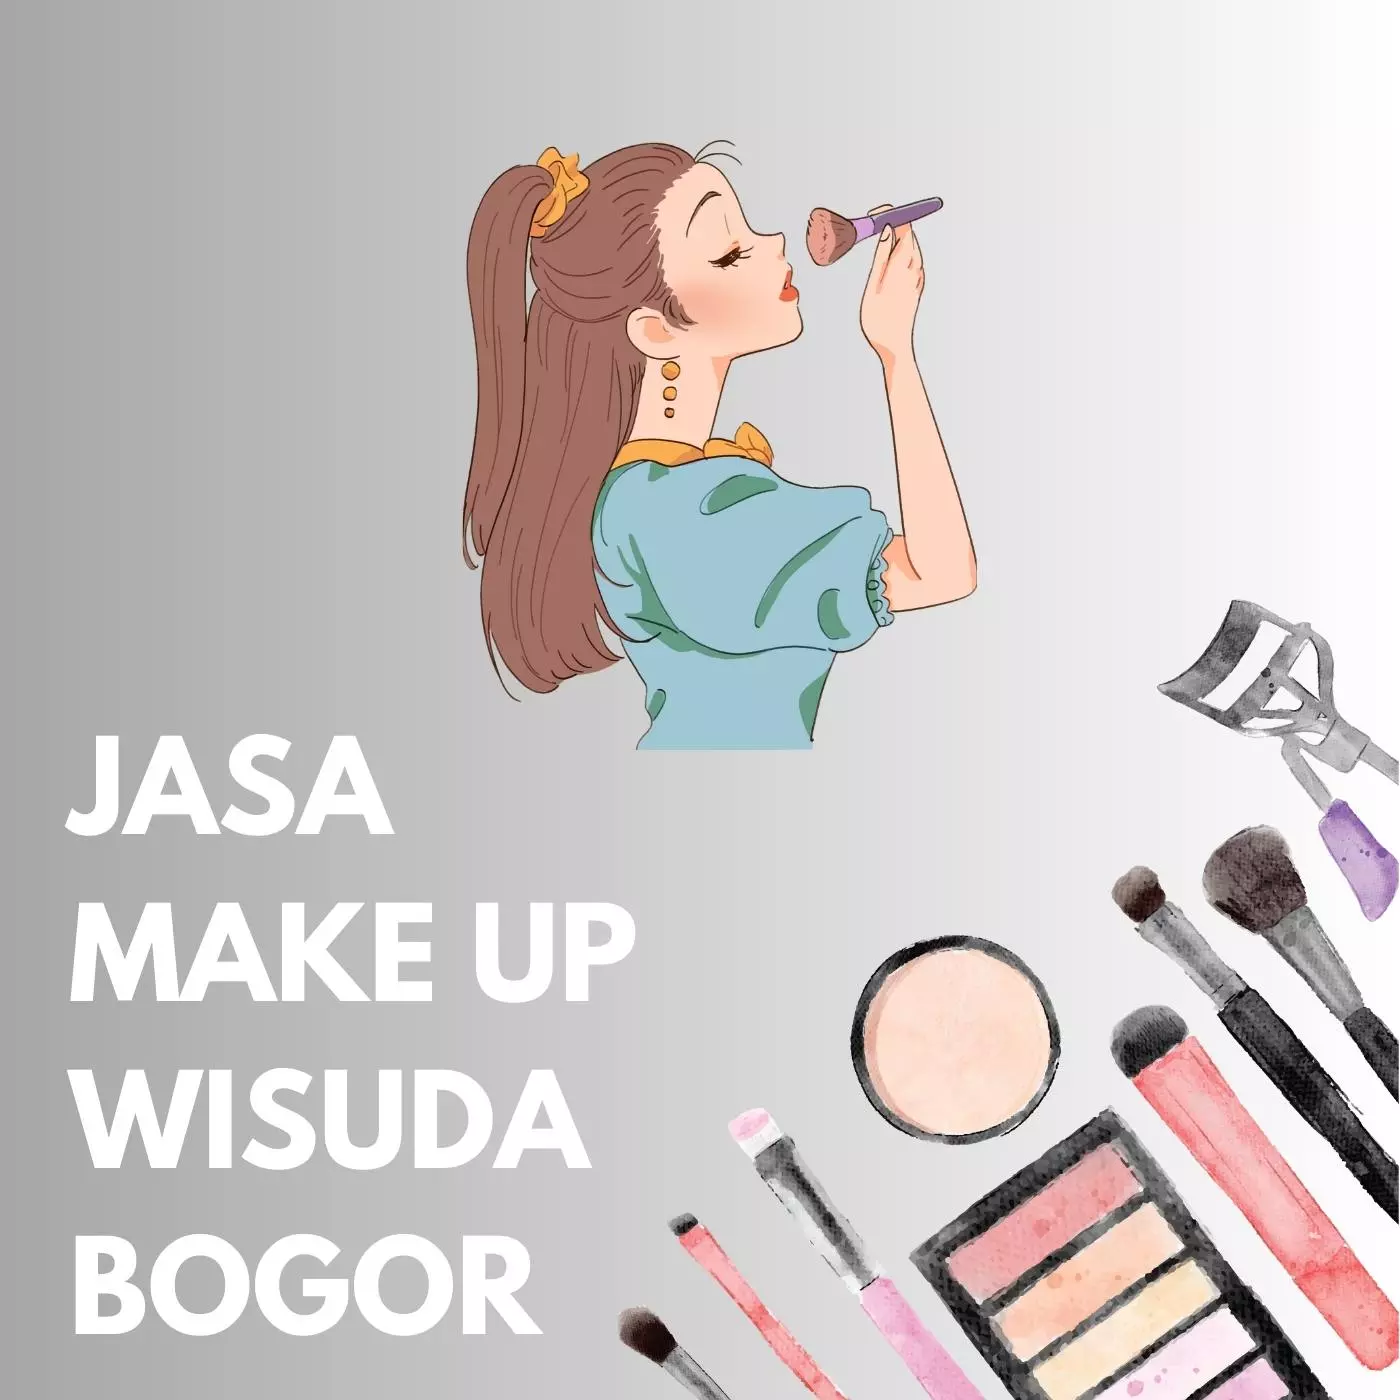 Jasa Make Up Wisuda Bogor